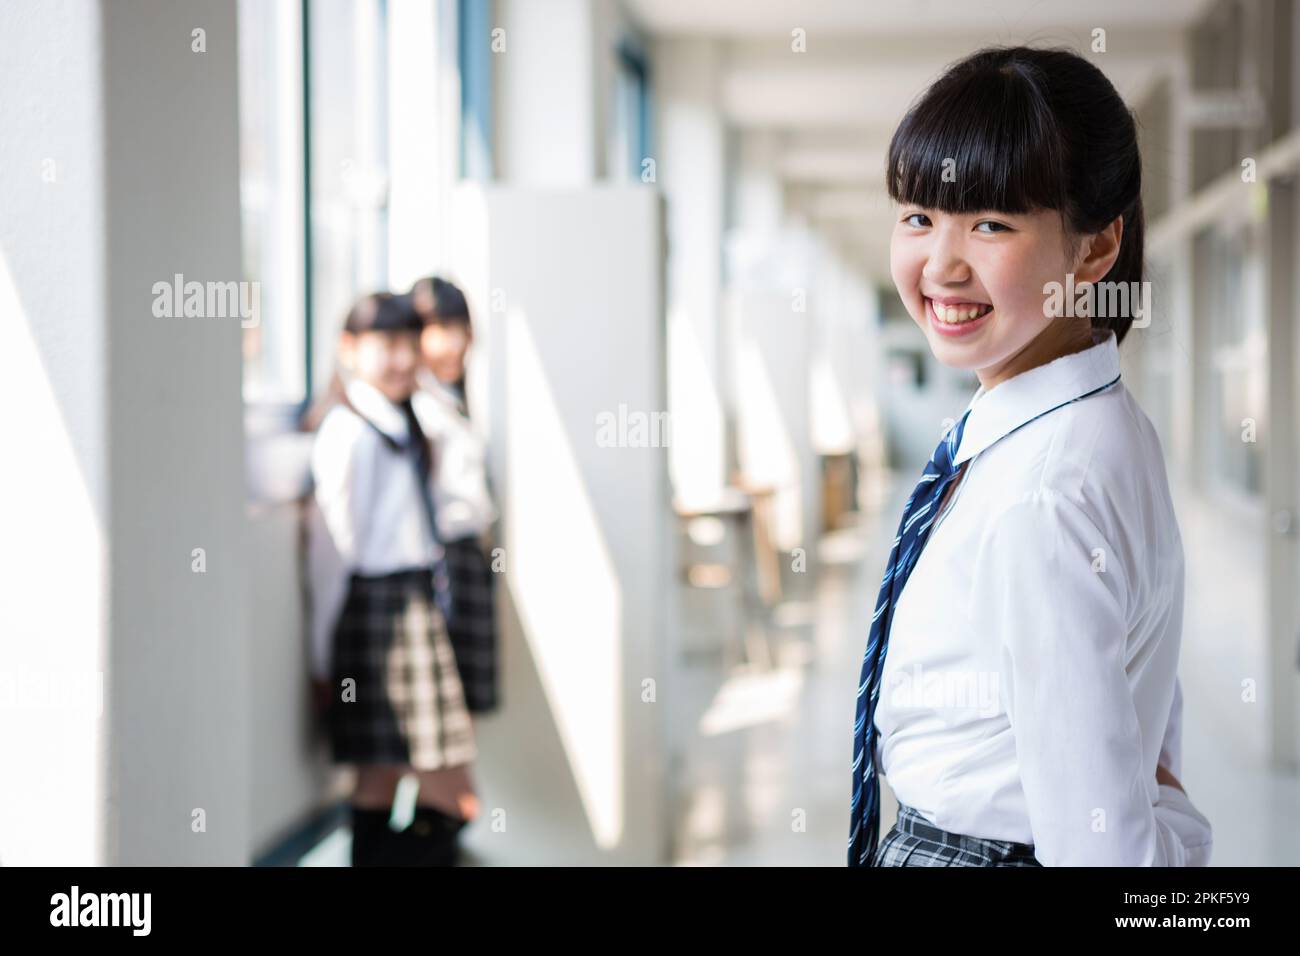 Junior High School Girls Standing in the Hallway Stock Photo